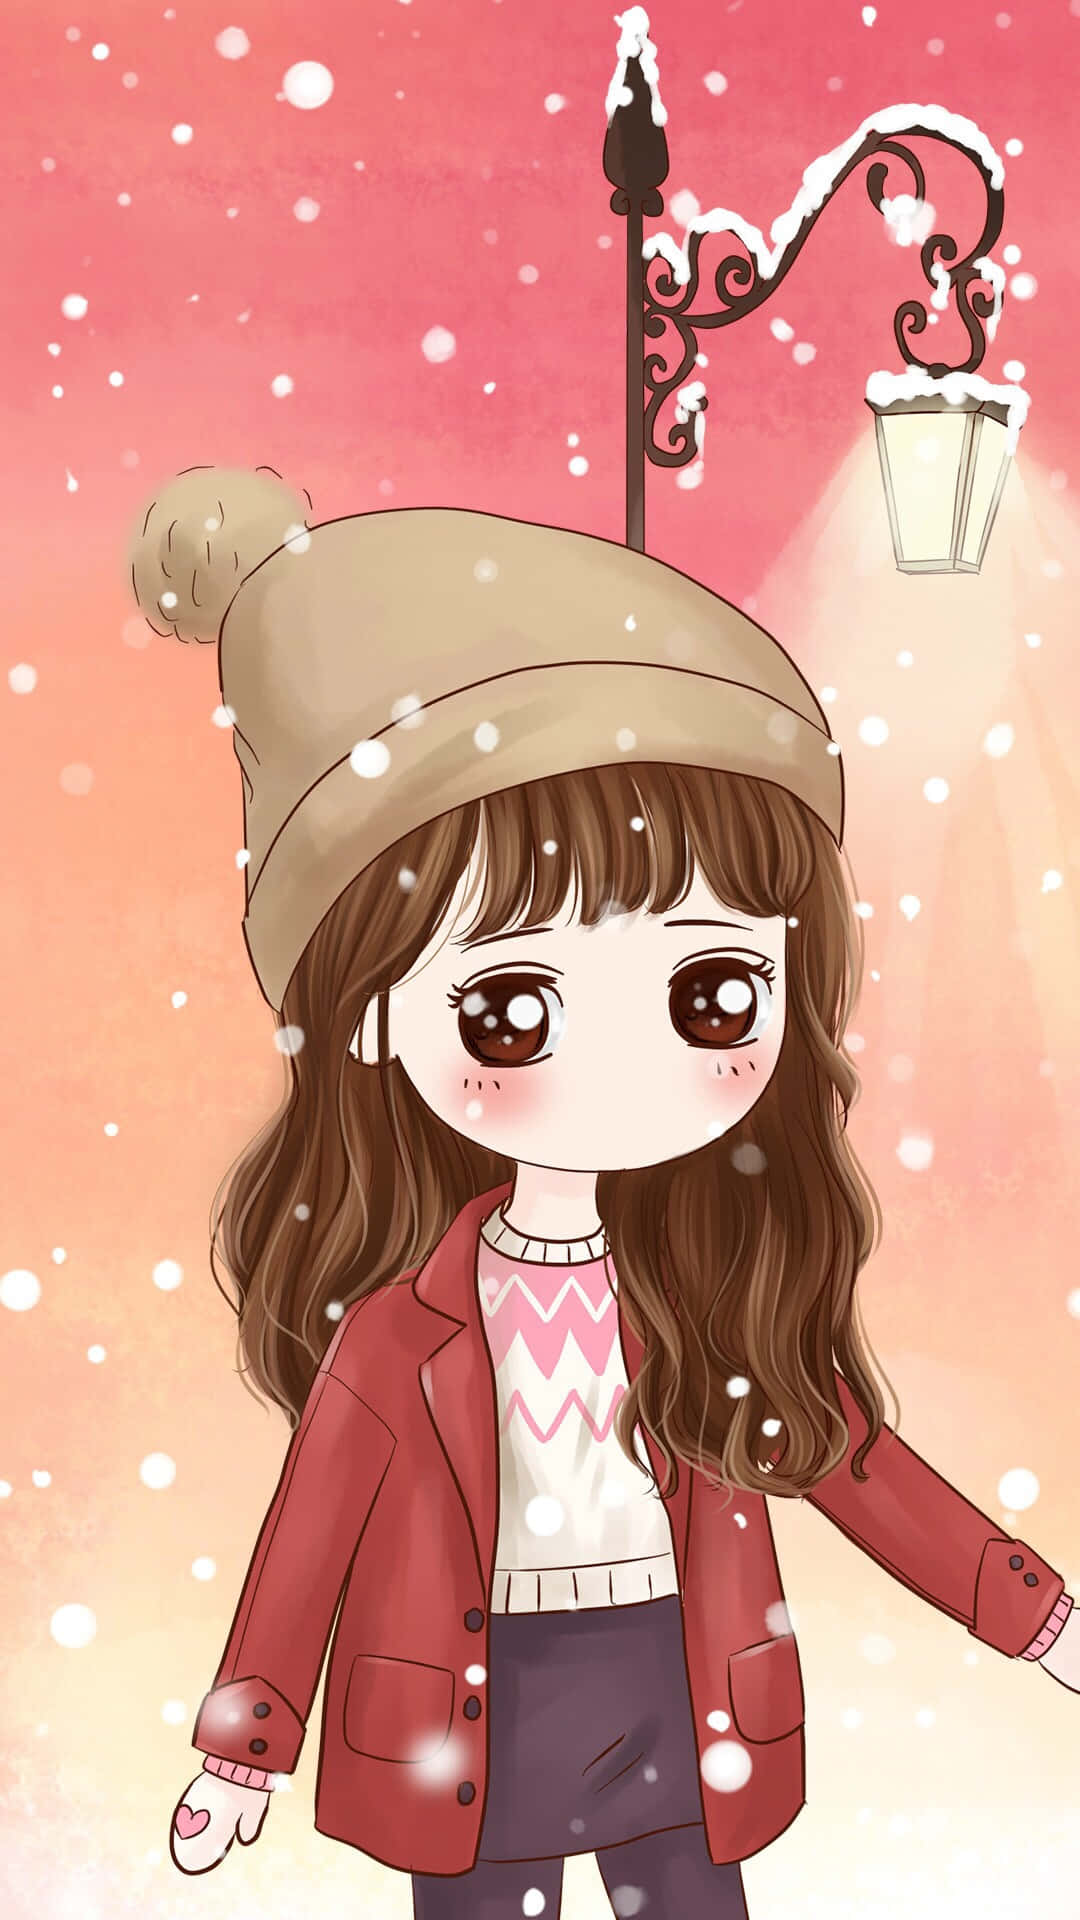 Korean Anime Girl Wearing Winter Clothing